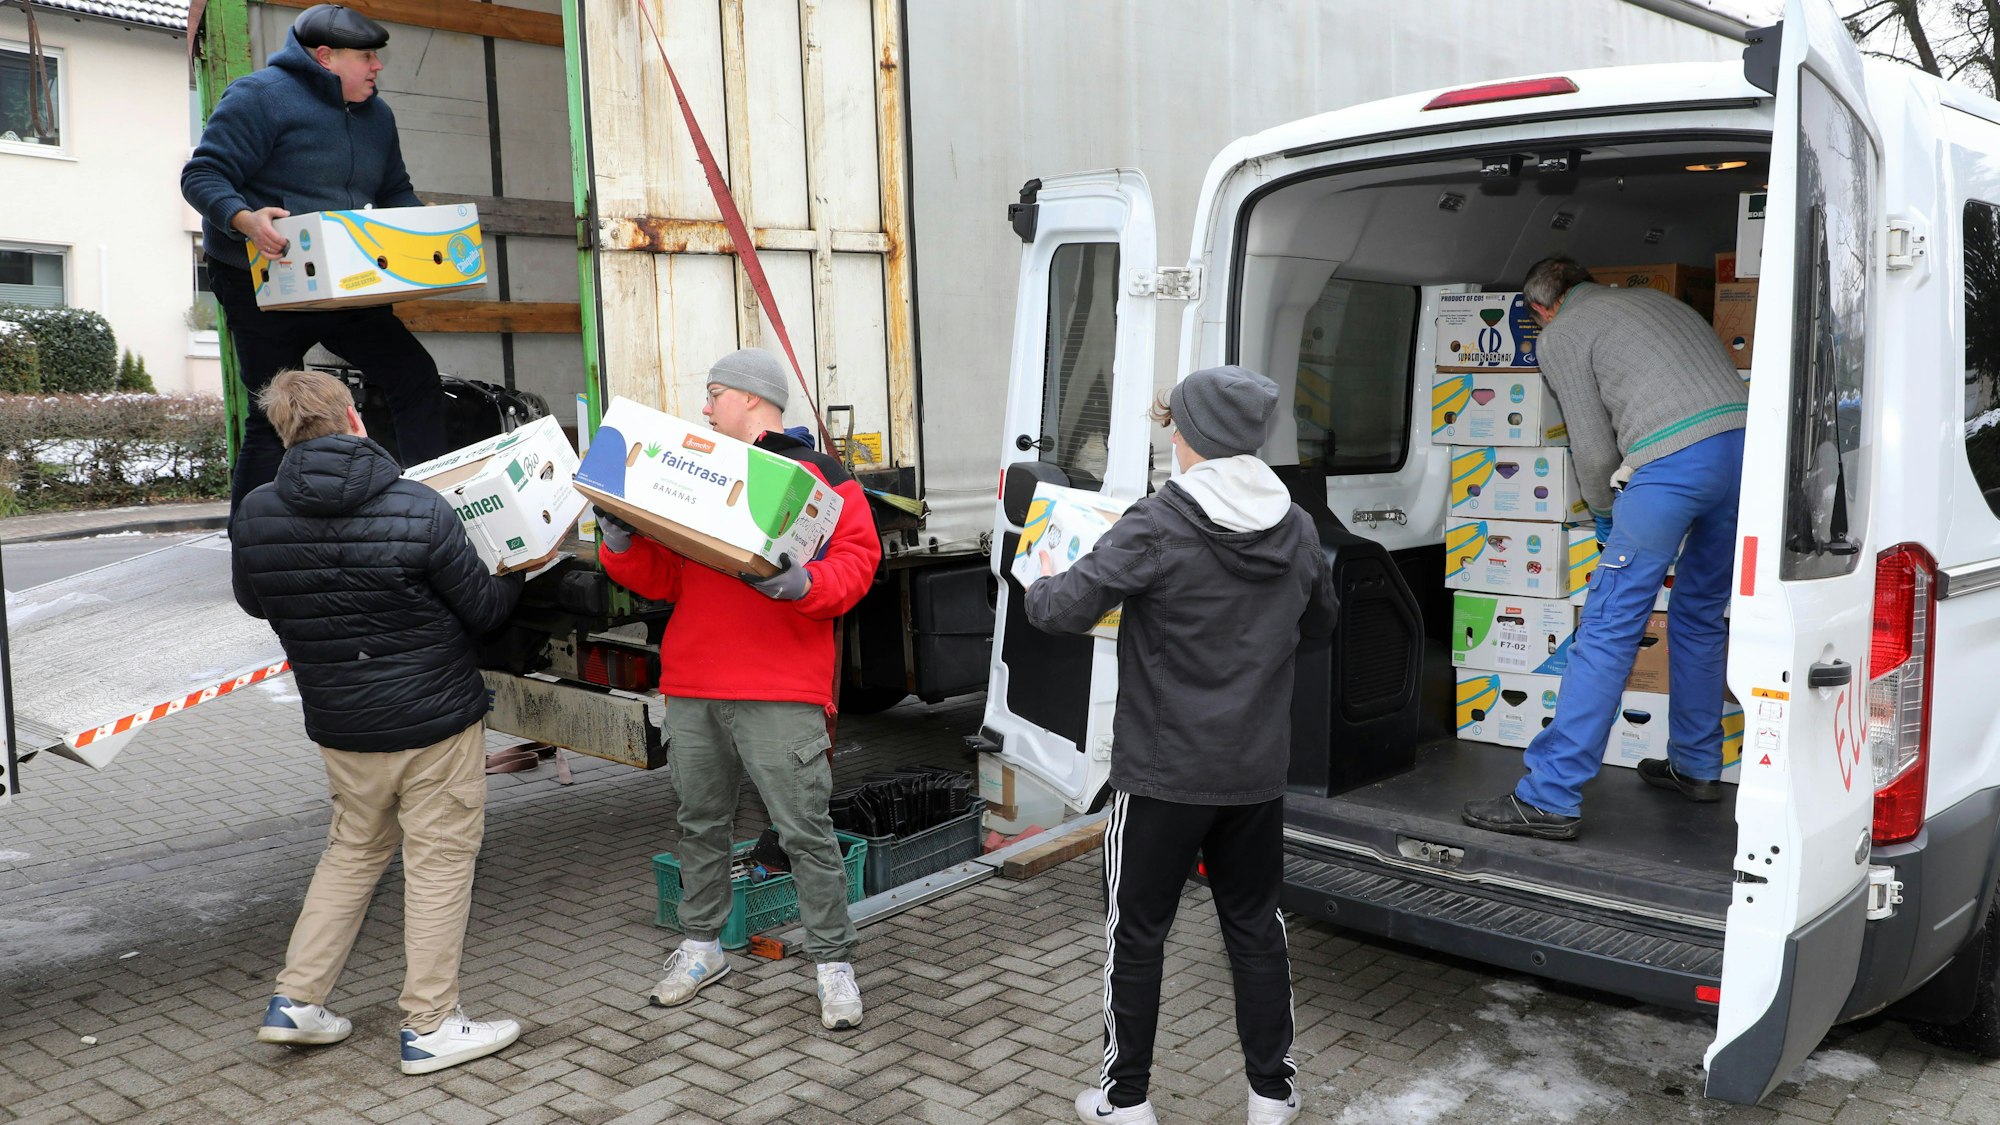 Helfer beladen einen Lastzug mit Hilfsgütern, die in Kartons verpackt sind.